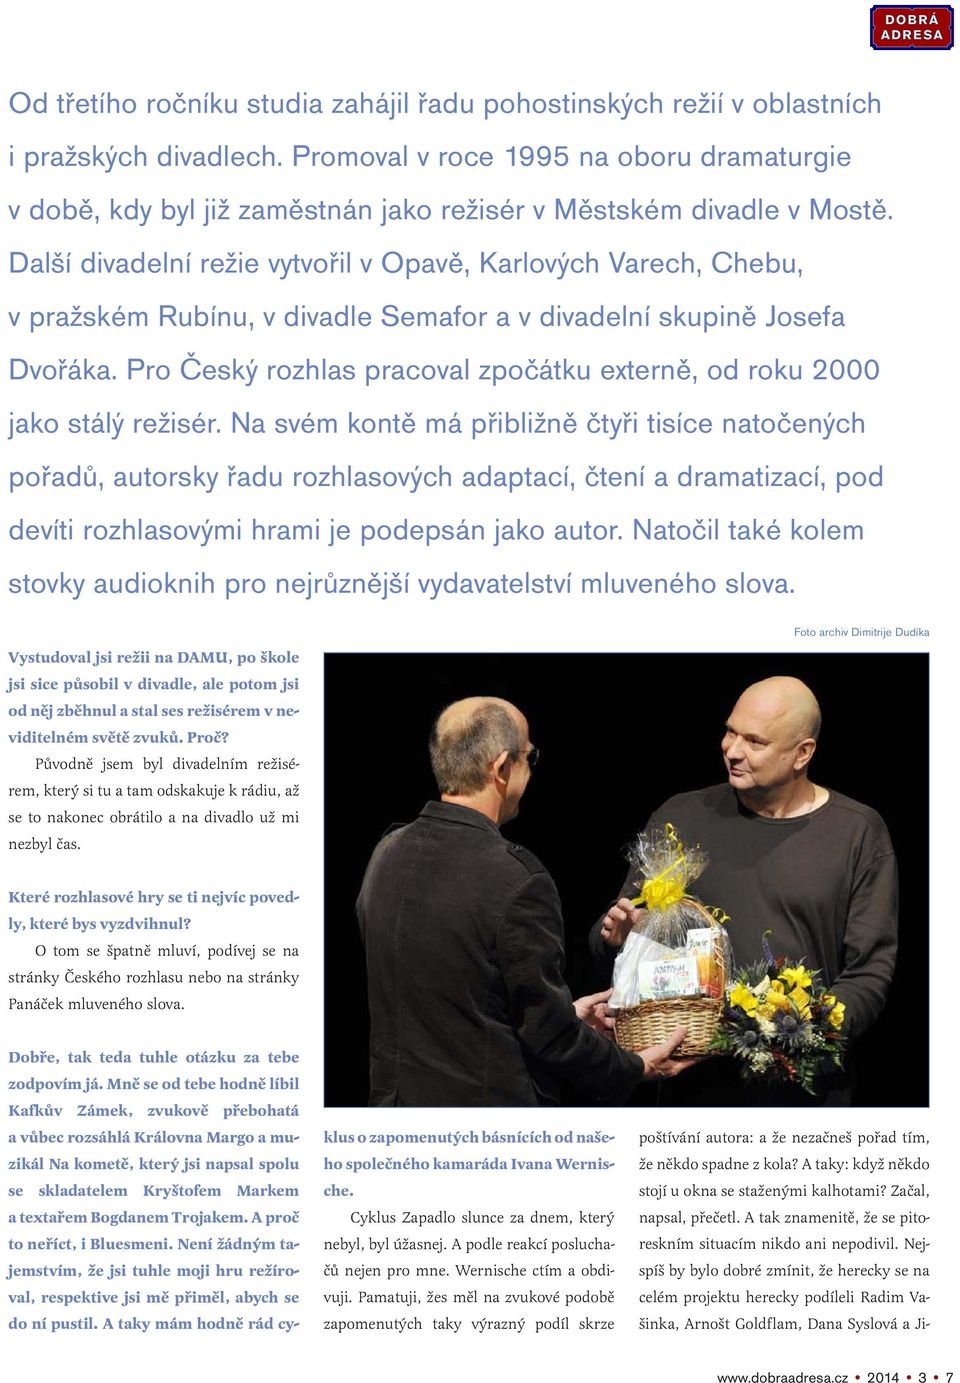 Další divadelní režie vytvořil v Opavě, Karlových Varech, Chebu, v pražském Rubínu, v divadle Semafor a v divadelní skupině Josefa Dvořáka.